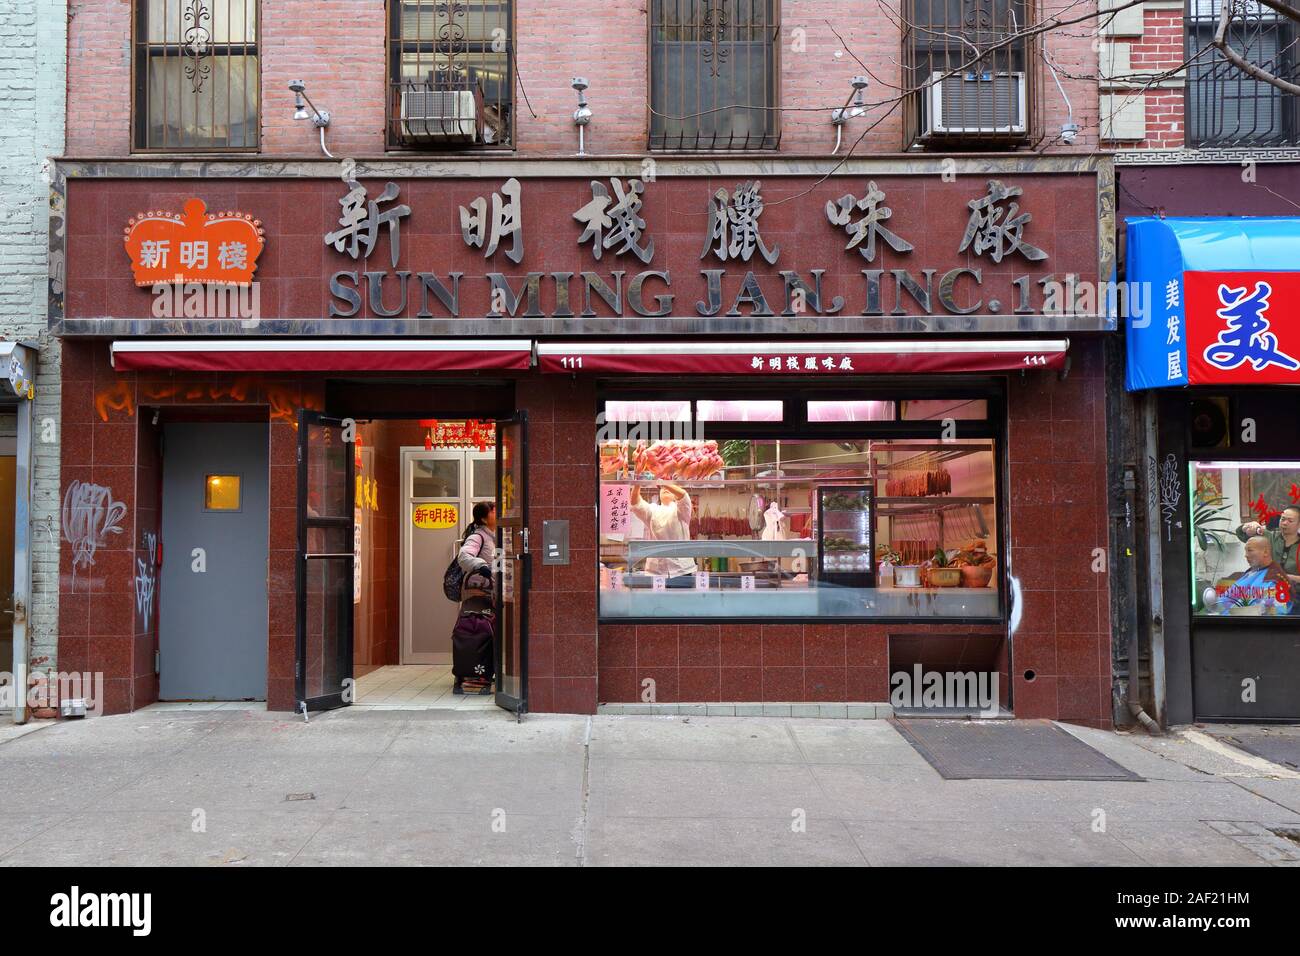 Sun Ming Jan 新明栈, 111 Hester Street, New York, NY. Façade extérieure d'un fabricant chinois de saucisses séchées dans le quartier chinois de Manhattan Banque D'Images